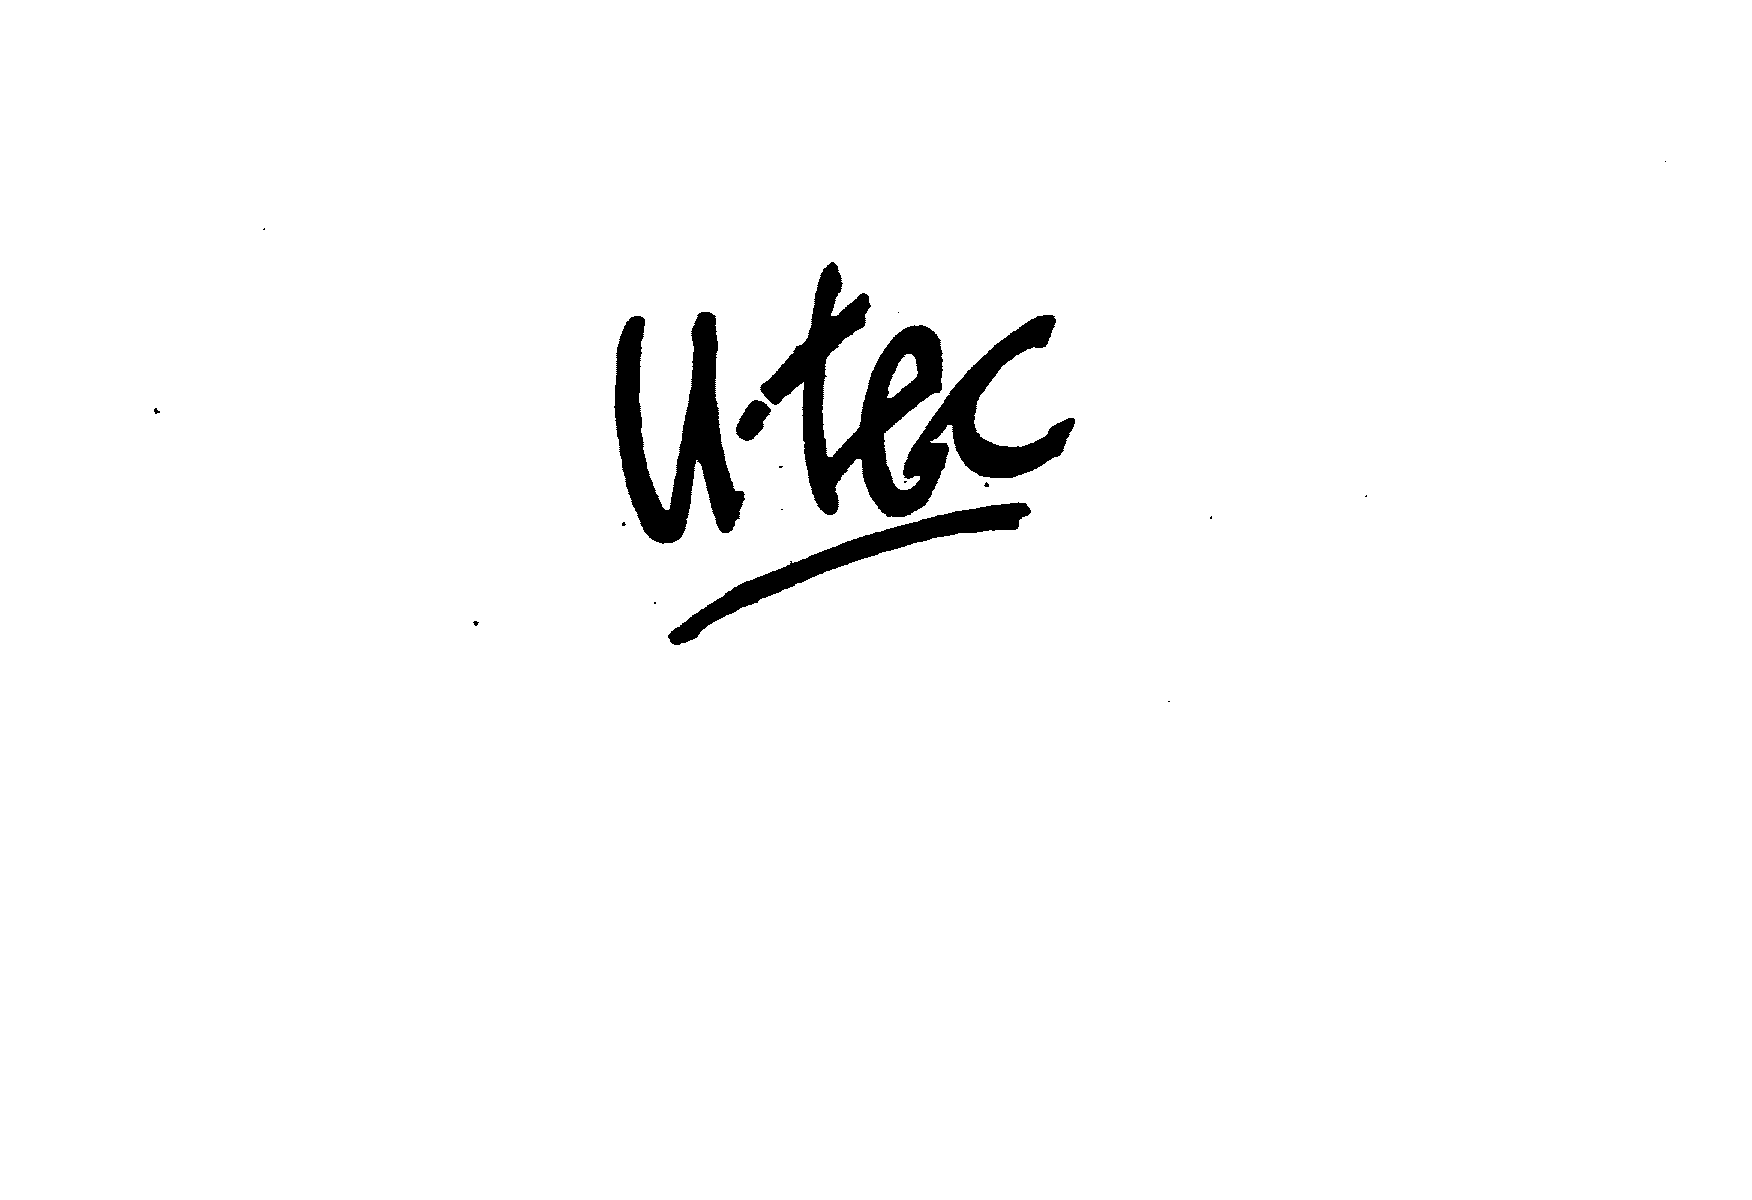 U-TEC